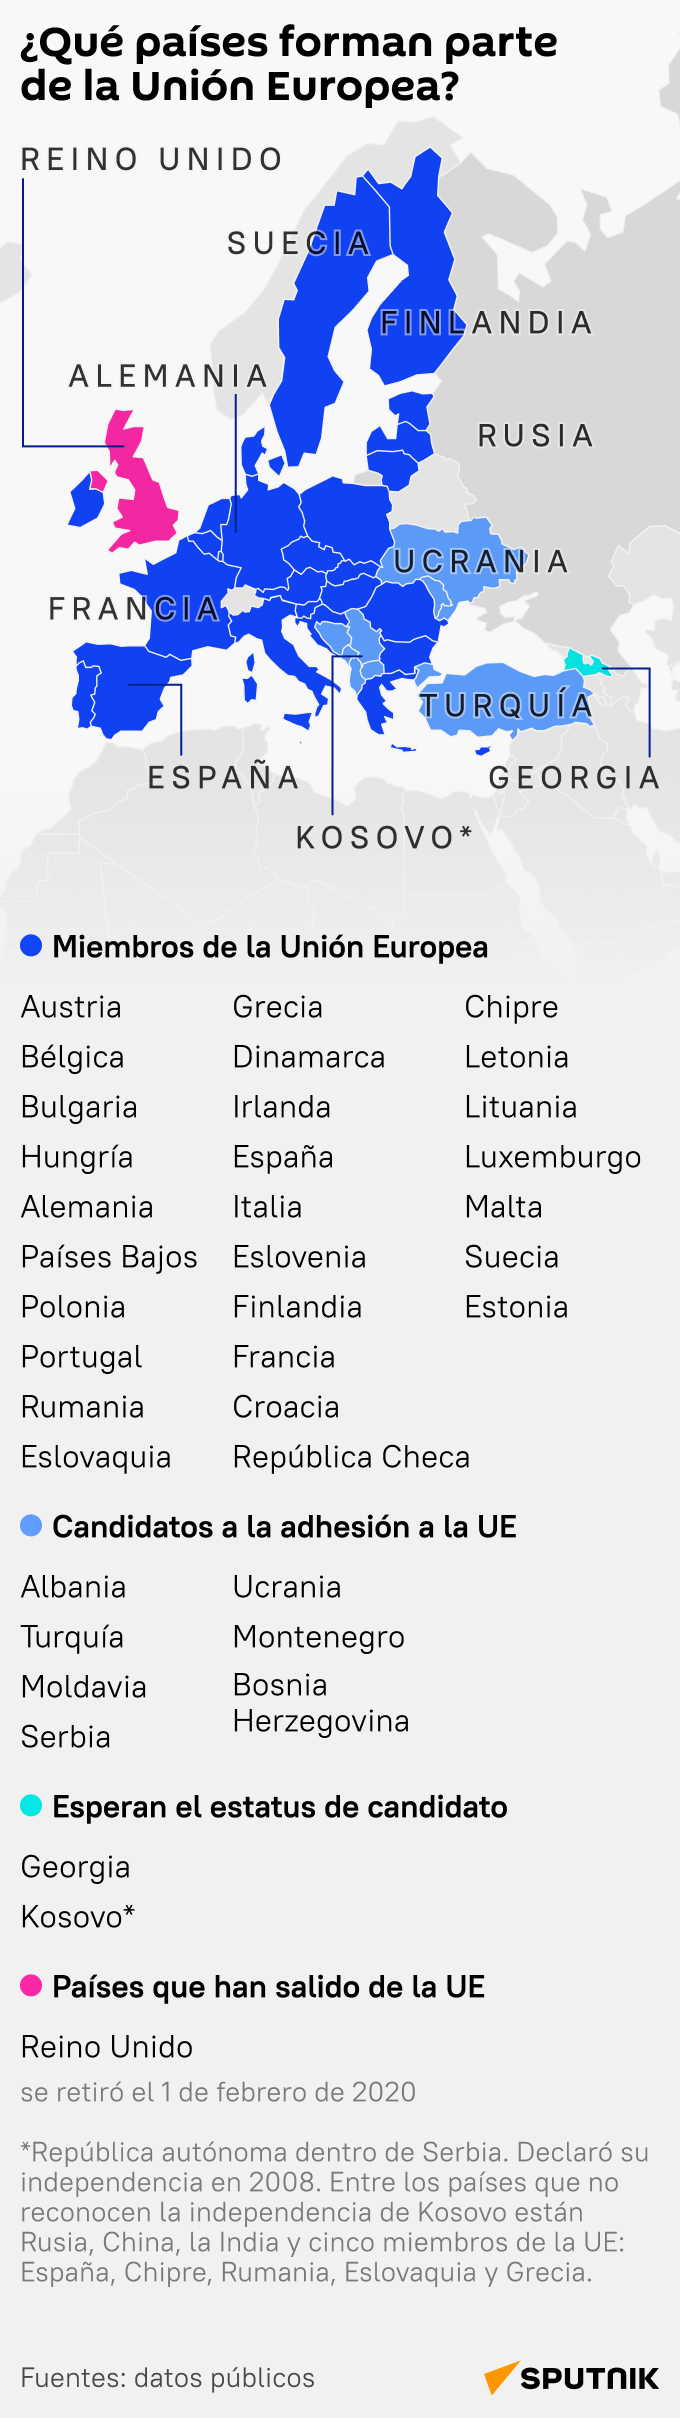 ¿Qué países forman parte de la Unión Europea? - Sputnik Mundo